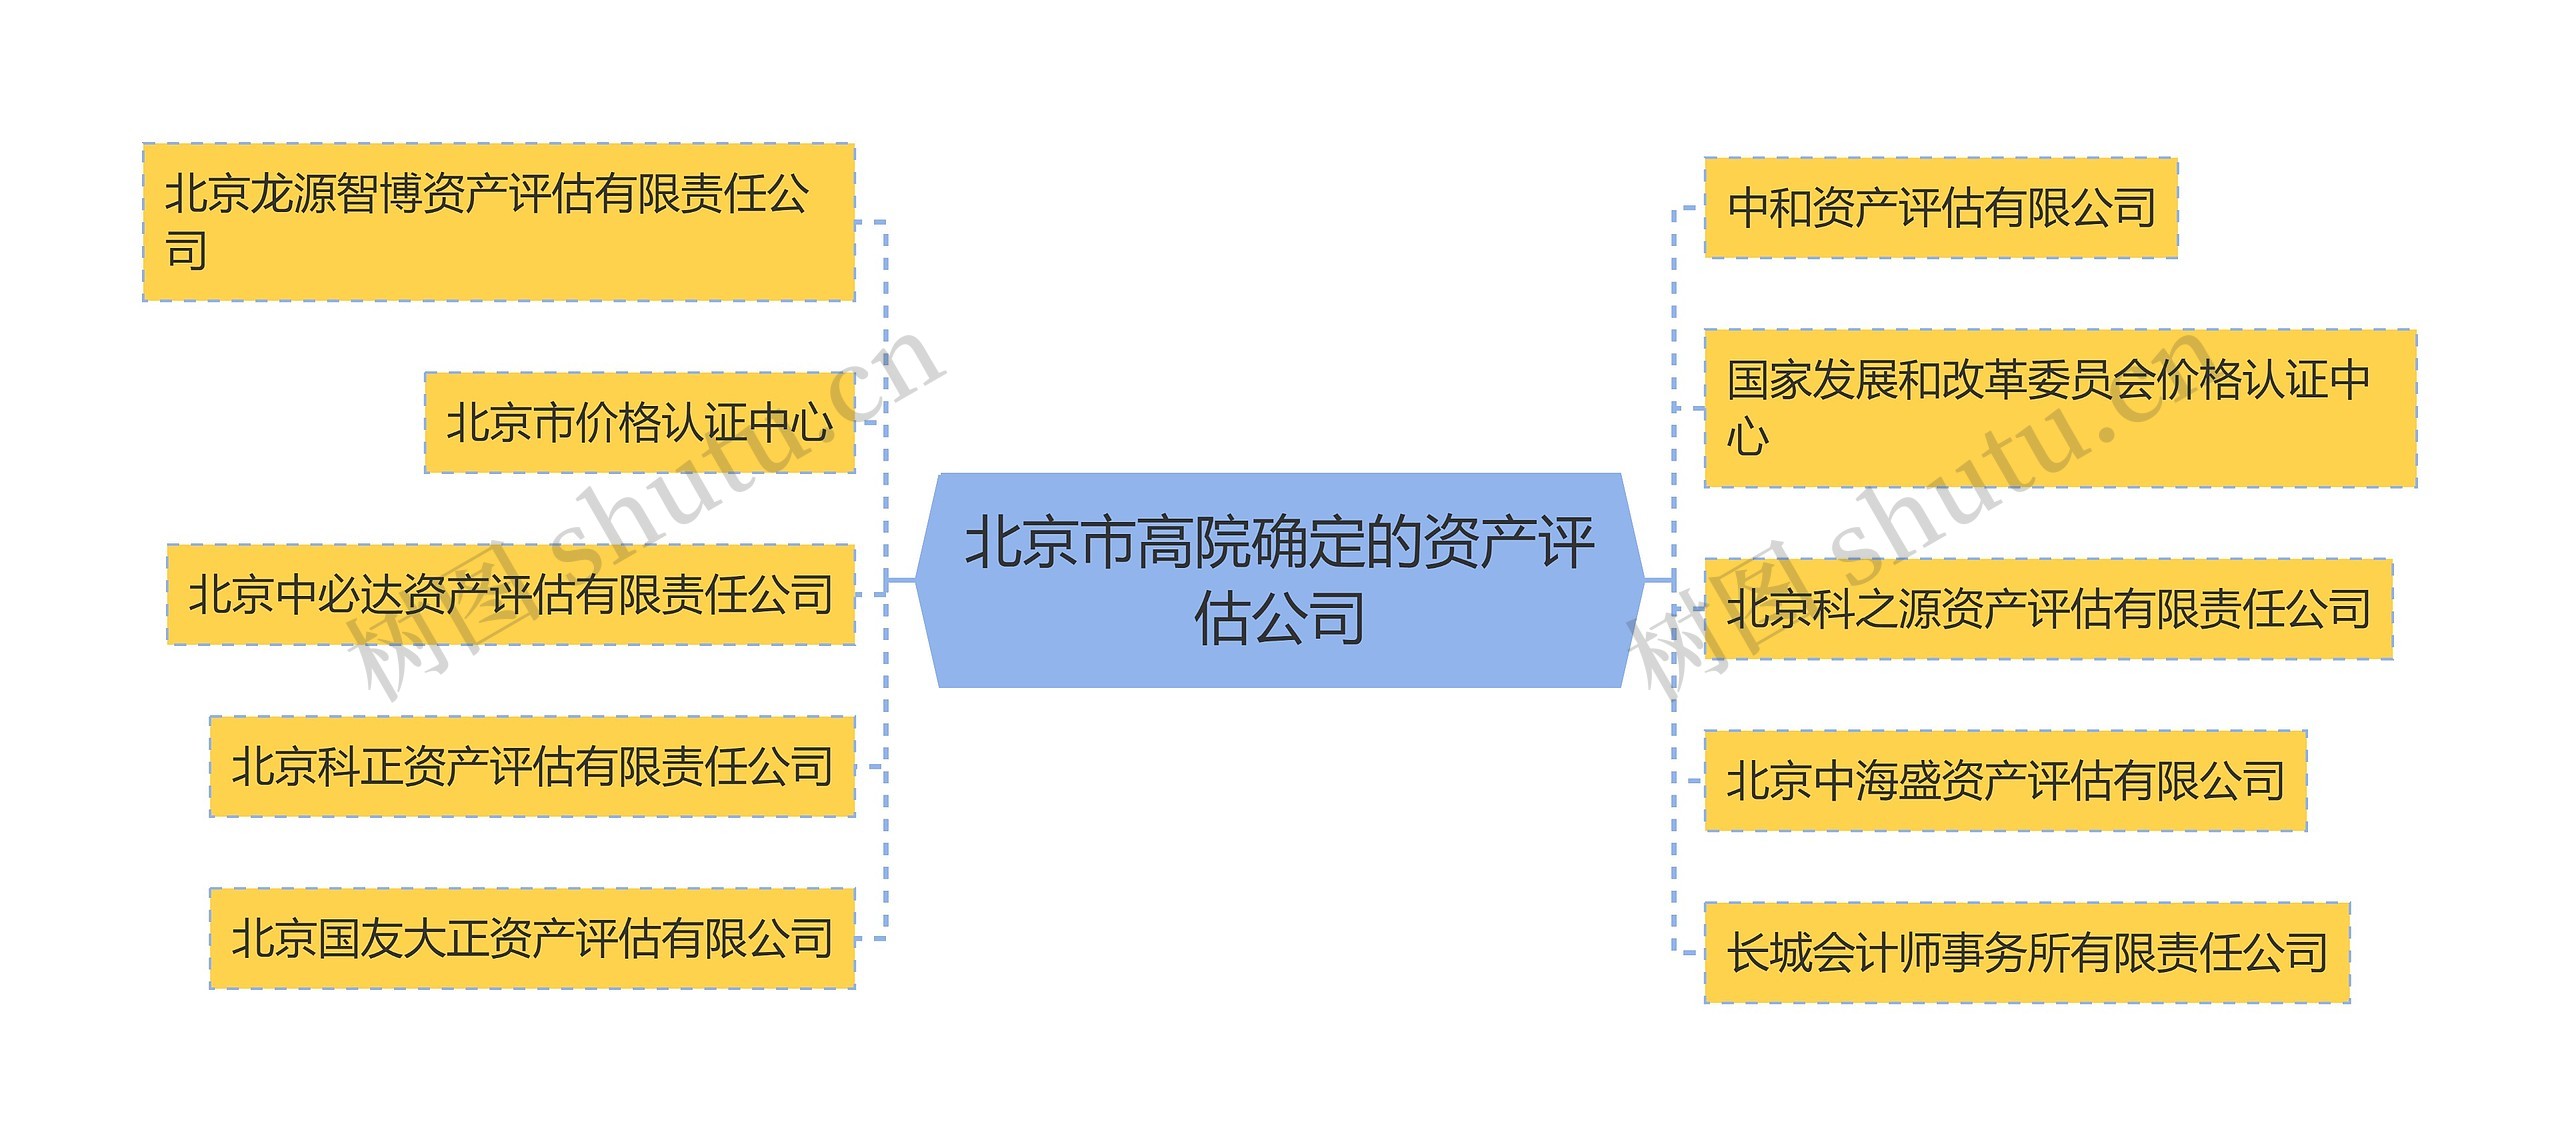 北京市高院确定的资产评估公司思维导图